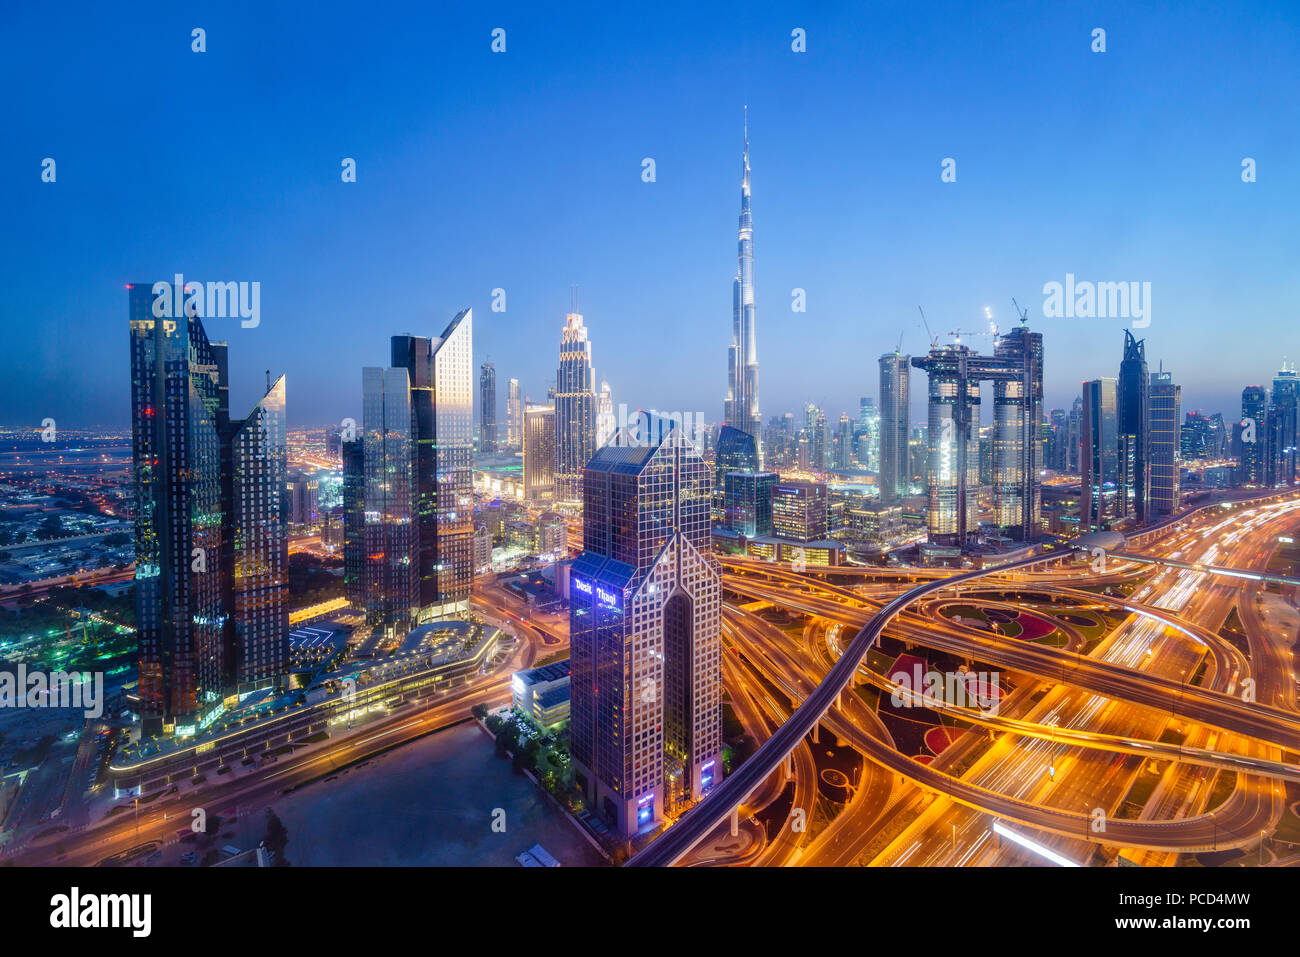 Skyline von Dubai mit Burj Khalifa und der Sheikh Zayed Road, Dubai, Vereinigte Arabische Emirate, Naher Osten Stockfoto